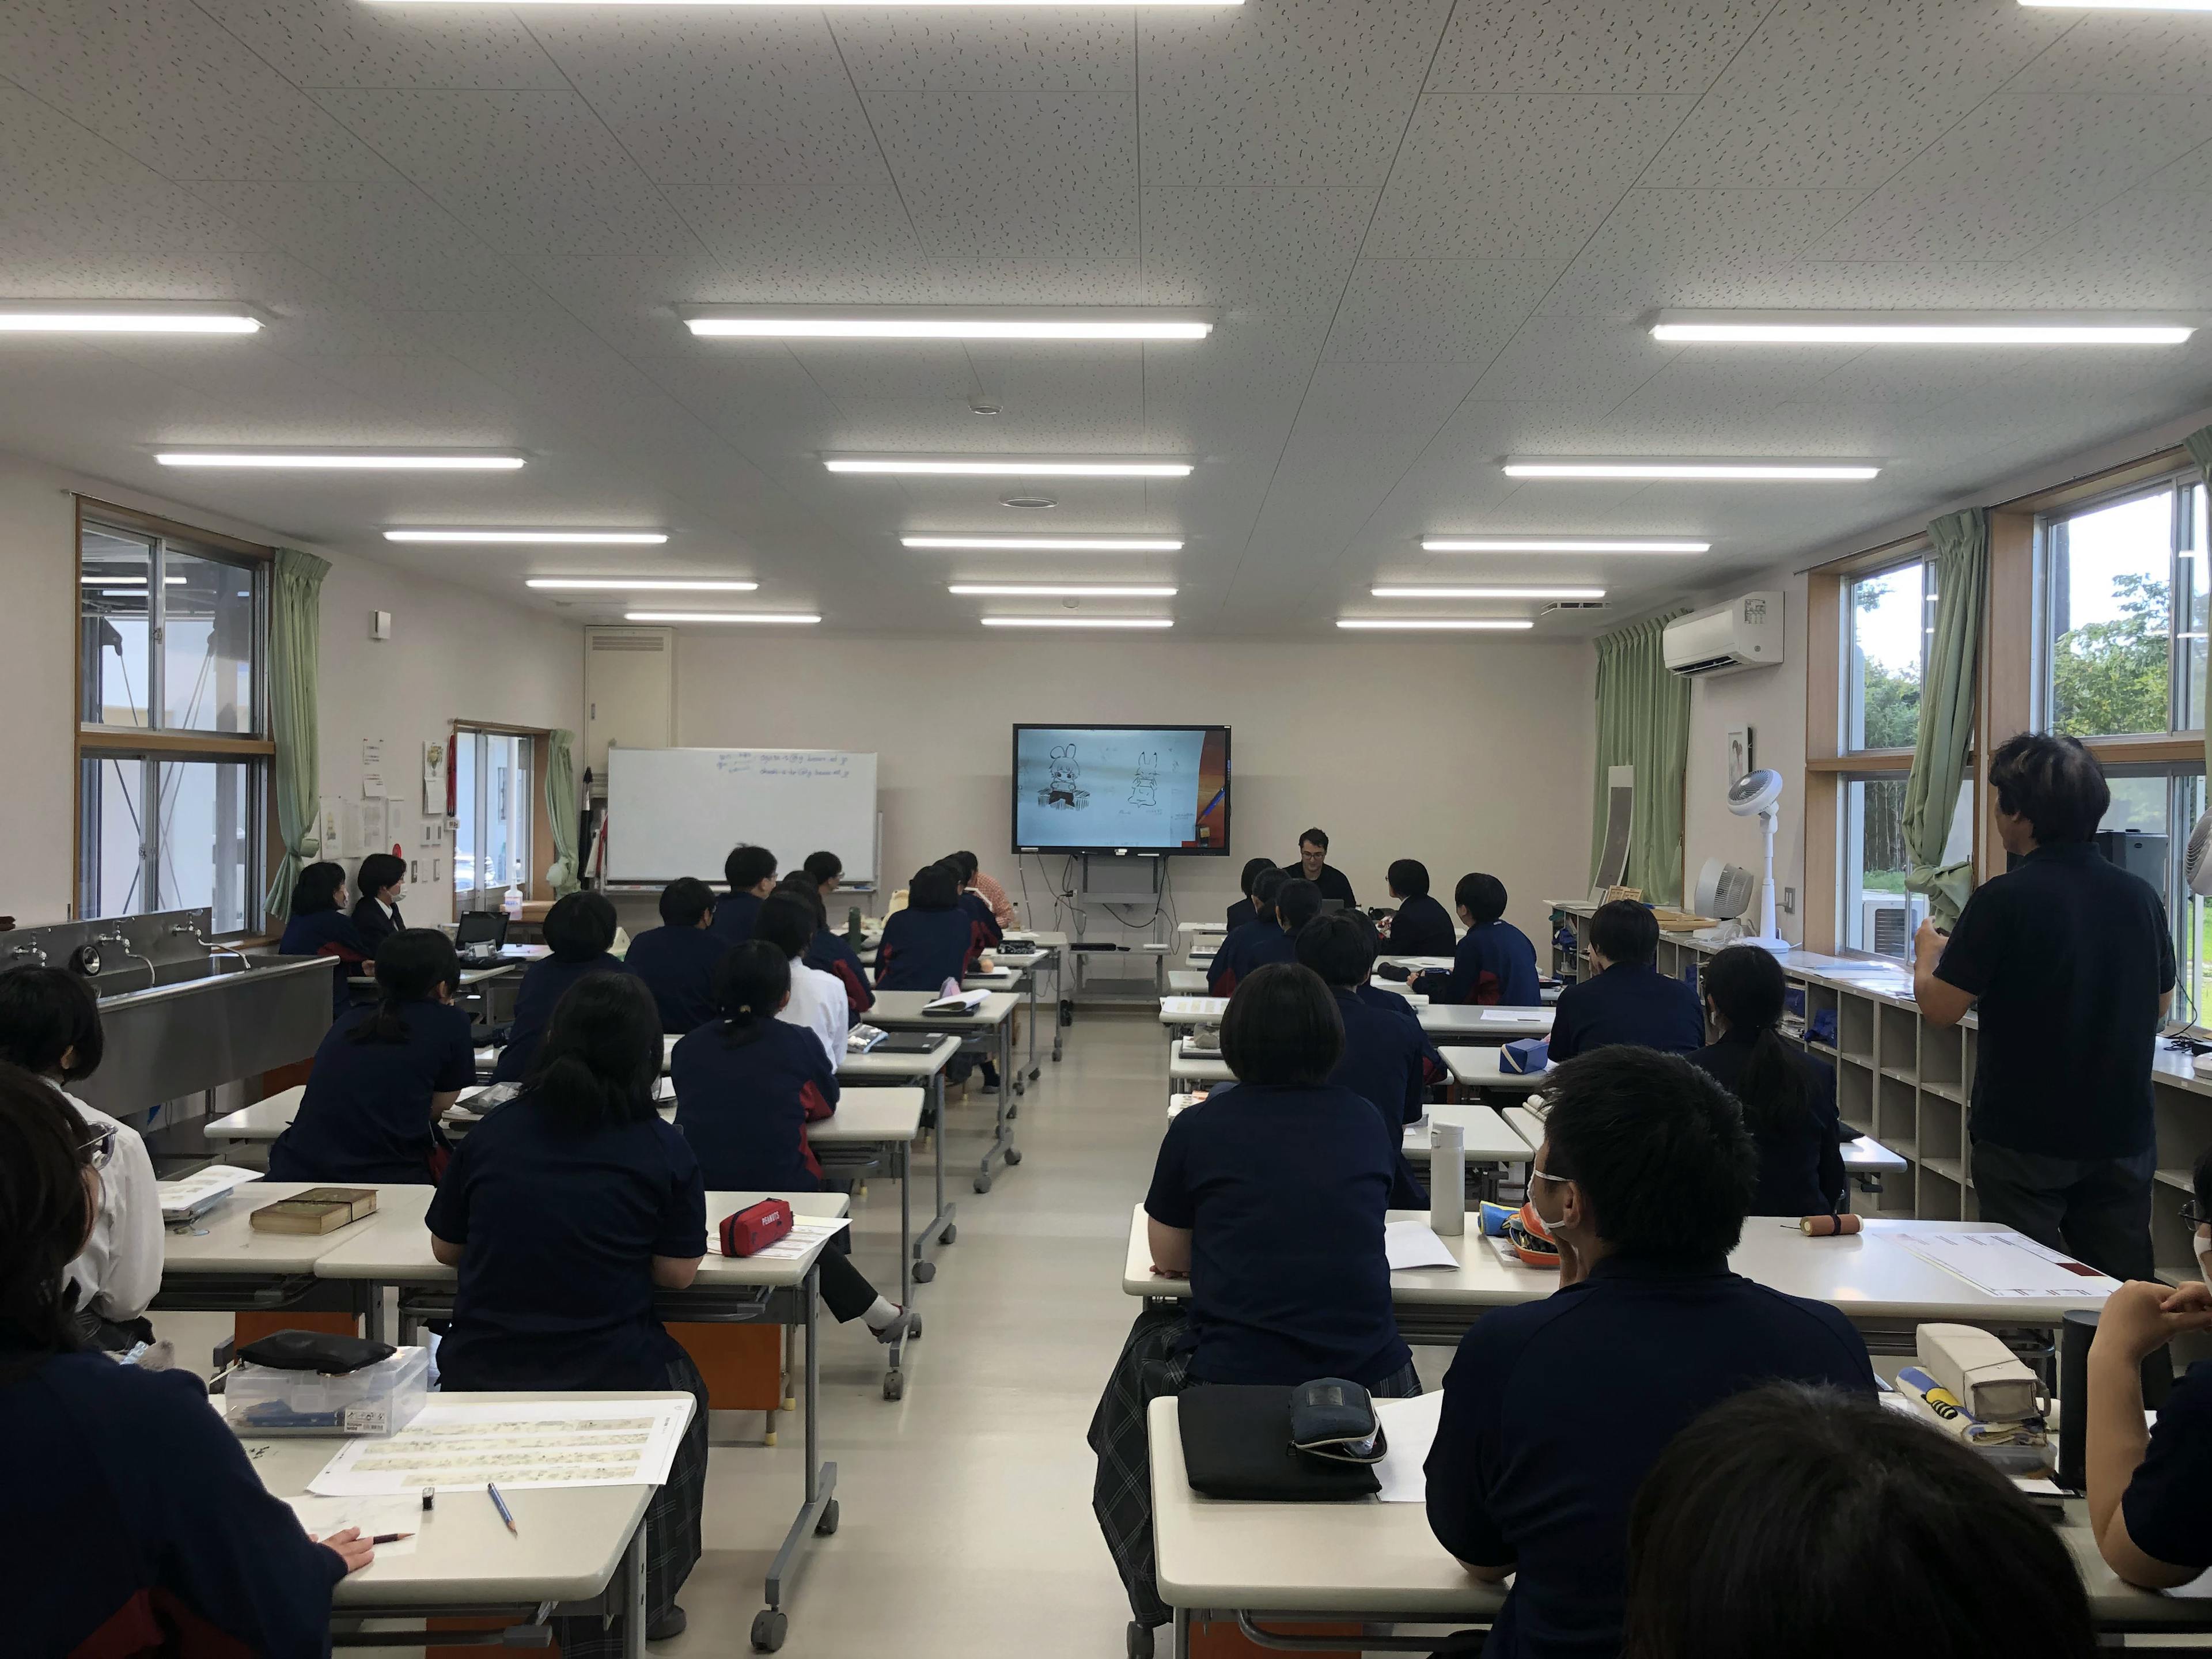 Факультет манги средней школы Такамори был представлен в программе Nippon Television «Большой вопрос 100 миллионов человек!? Улыбайтесь и сотрудничайте!»